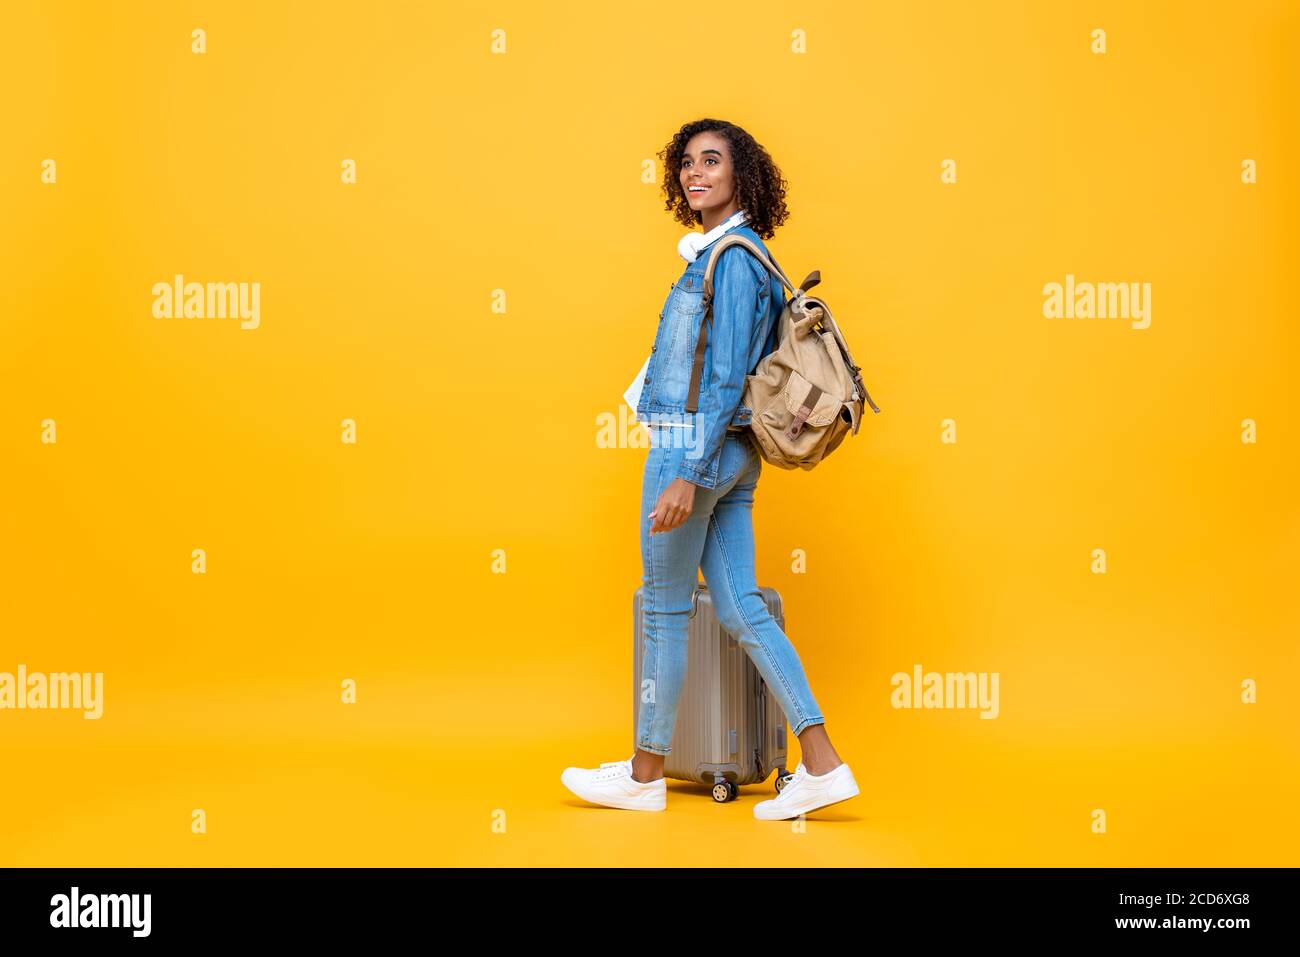 Ritratto di viaggio a tutta lunghezza di una giovane donna afro-americana stupita backpacker che cammina con i bagagli sullo sfondo giallo studio Foto Stock